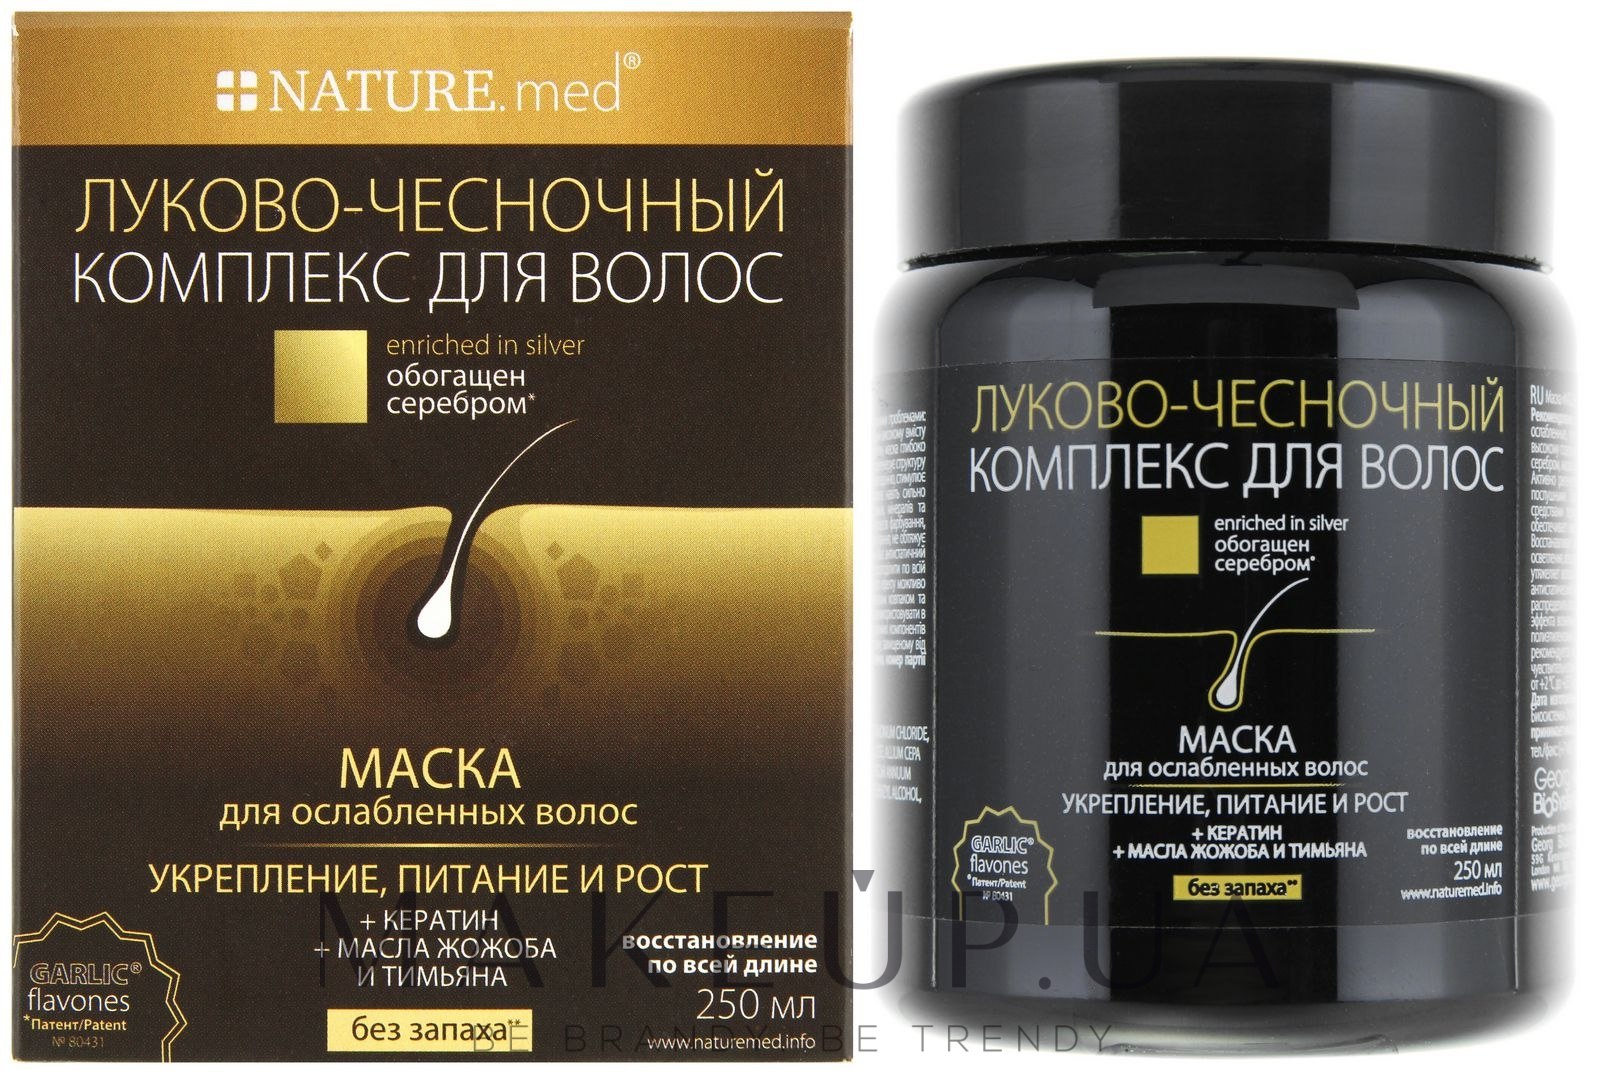 NATURE.med * - УЦЕНКА Маска для ослабленных волос обогащенная серебром "Укрепление, питание и рост": купить по лучшей цене в Украине